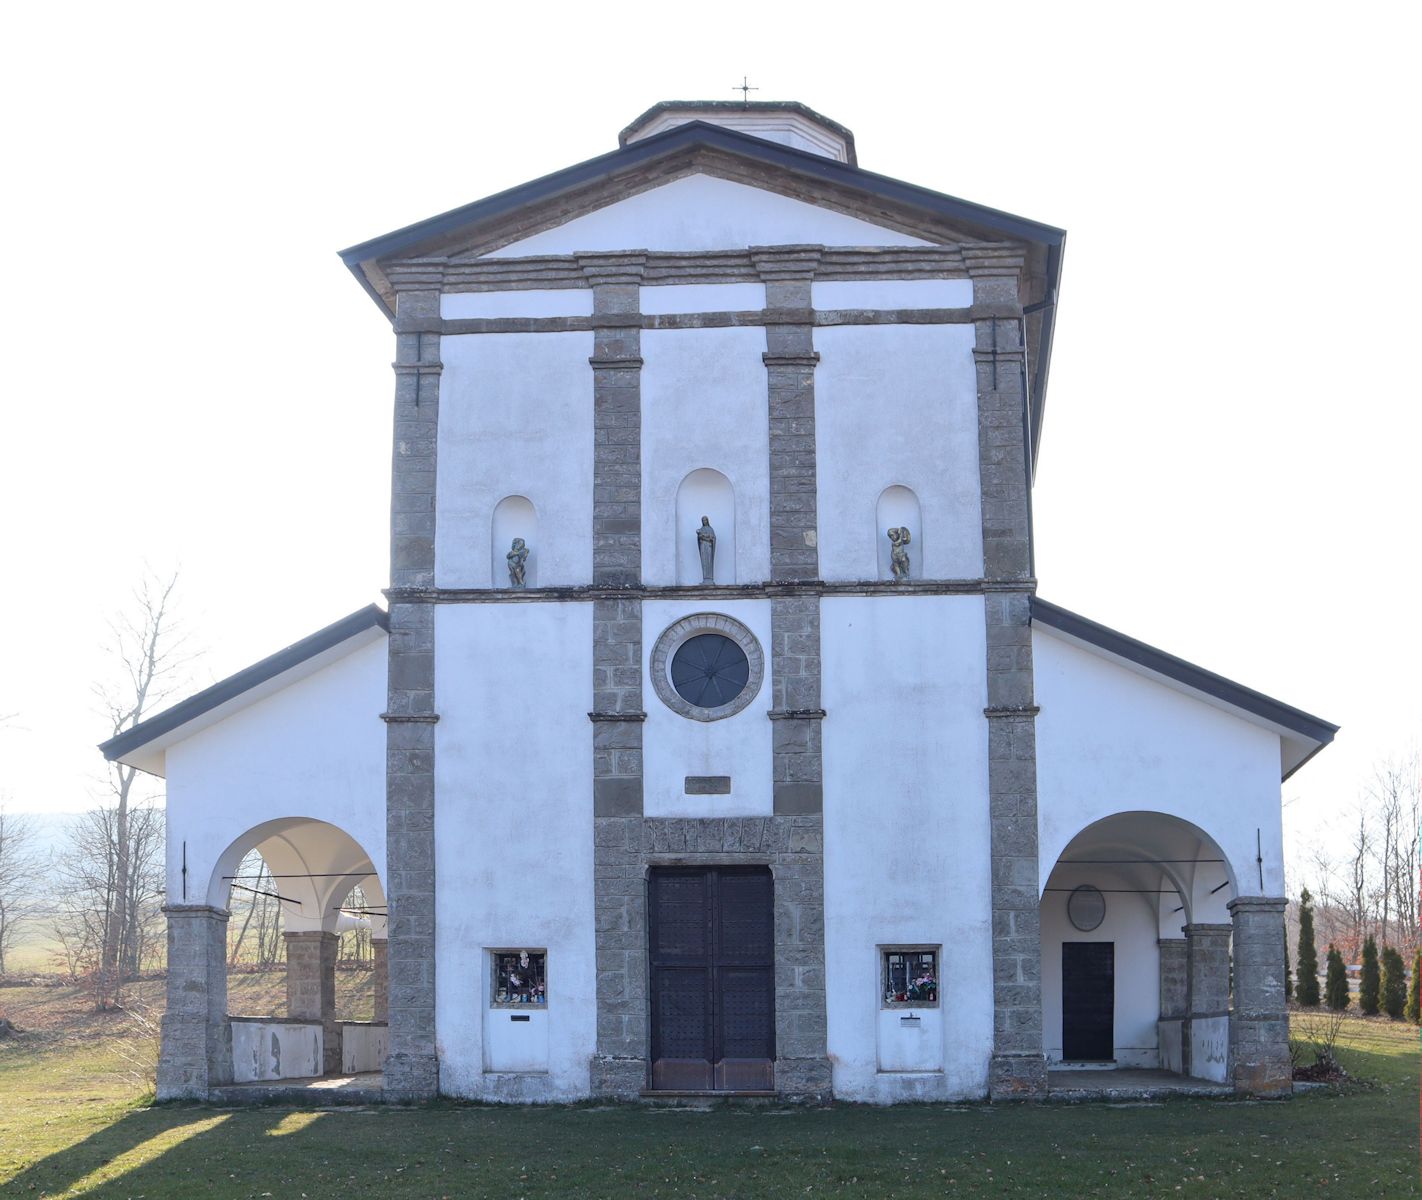 Sanktuarium von Santa Franca, erbaut im 19.Jahrhundert an der Stelle des ehemaligen Kloster Santa Maria di Montelana; Montelana war früher die Bezeichnung des Berges, auf dem das Kloster stand